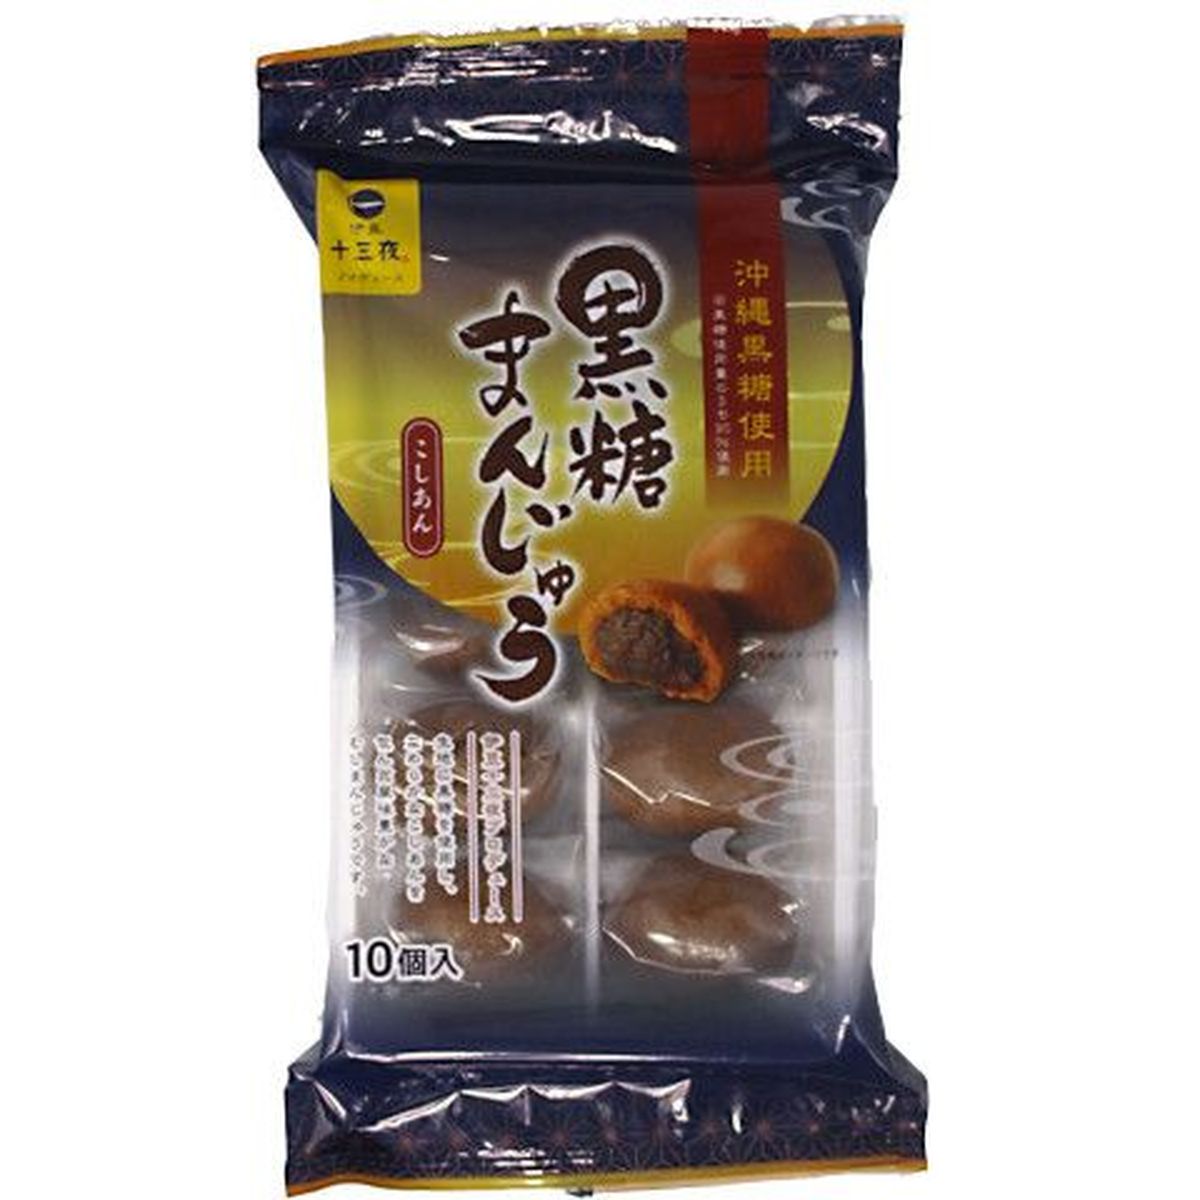 【12個入リ】土井製菓 黒糖マンジュウ 10個